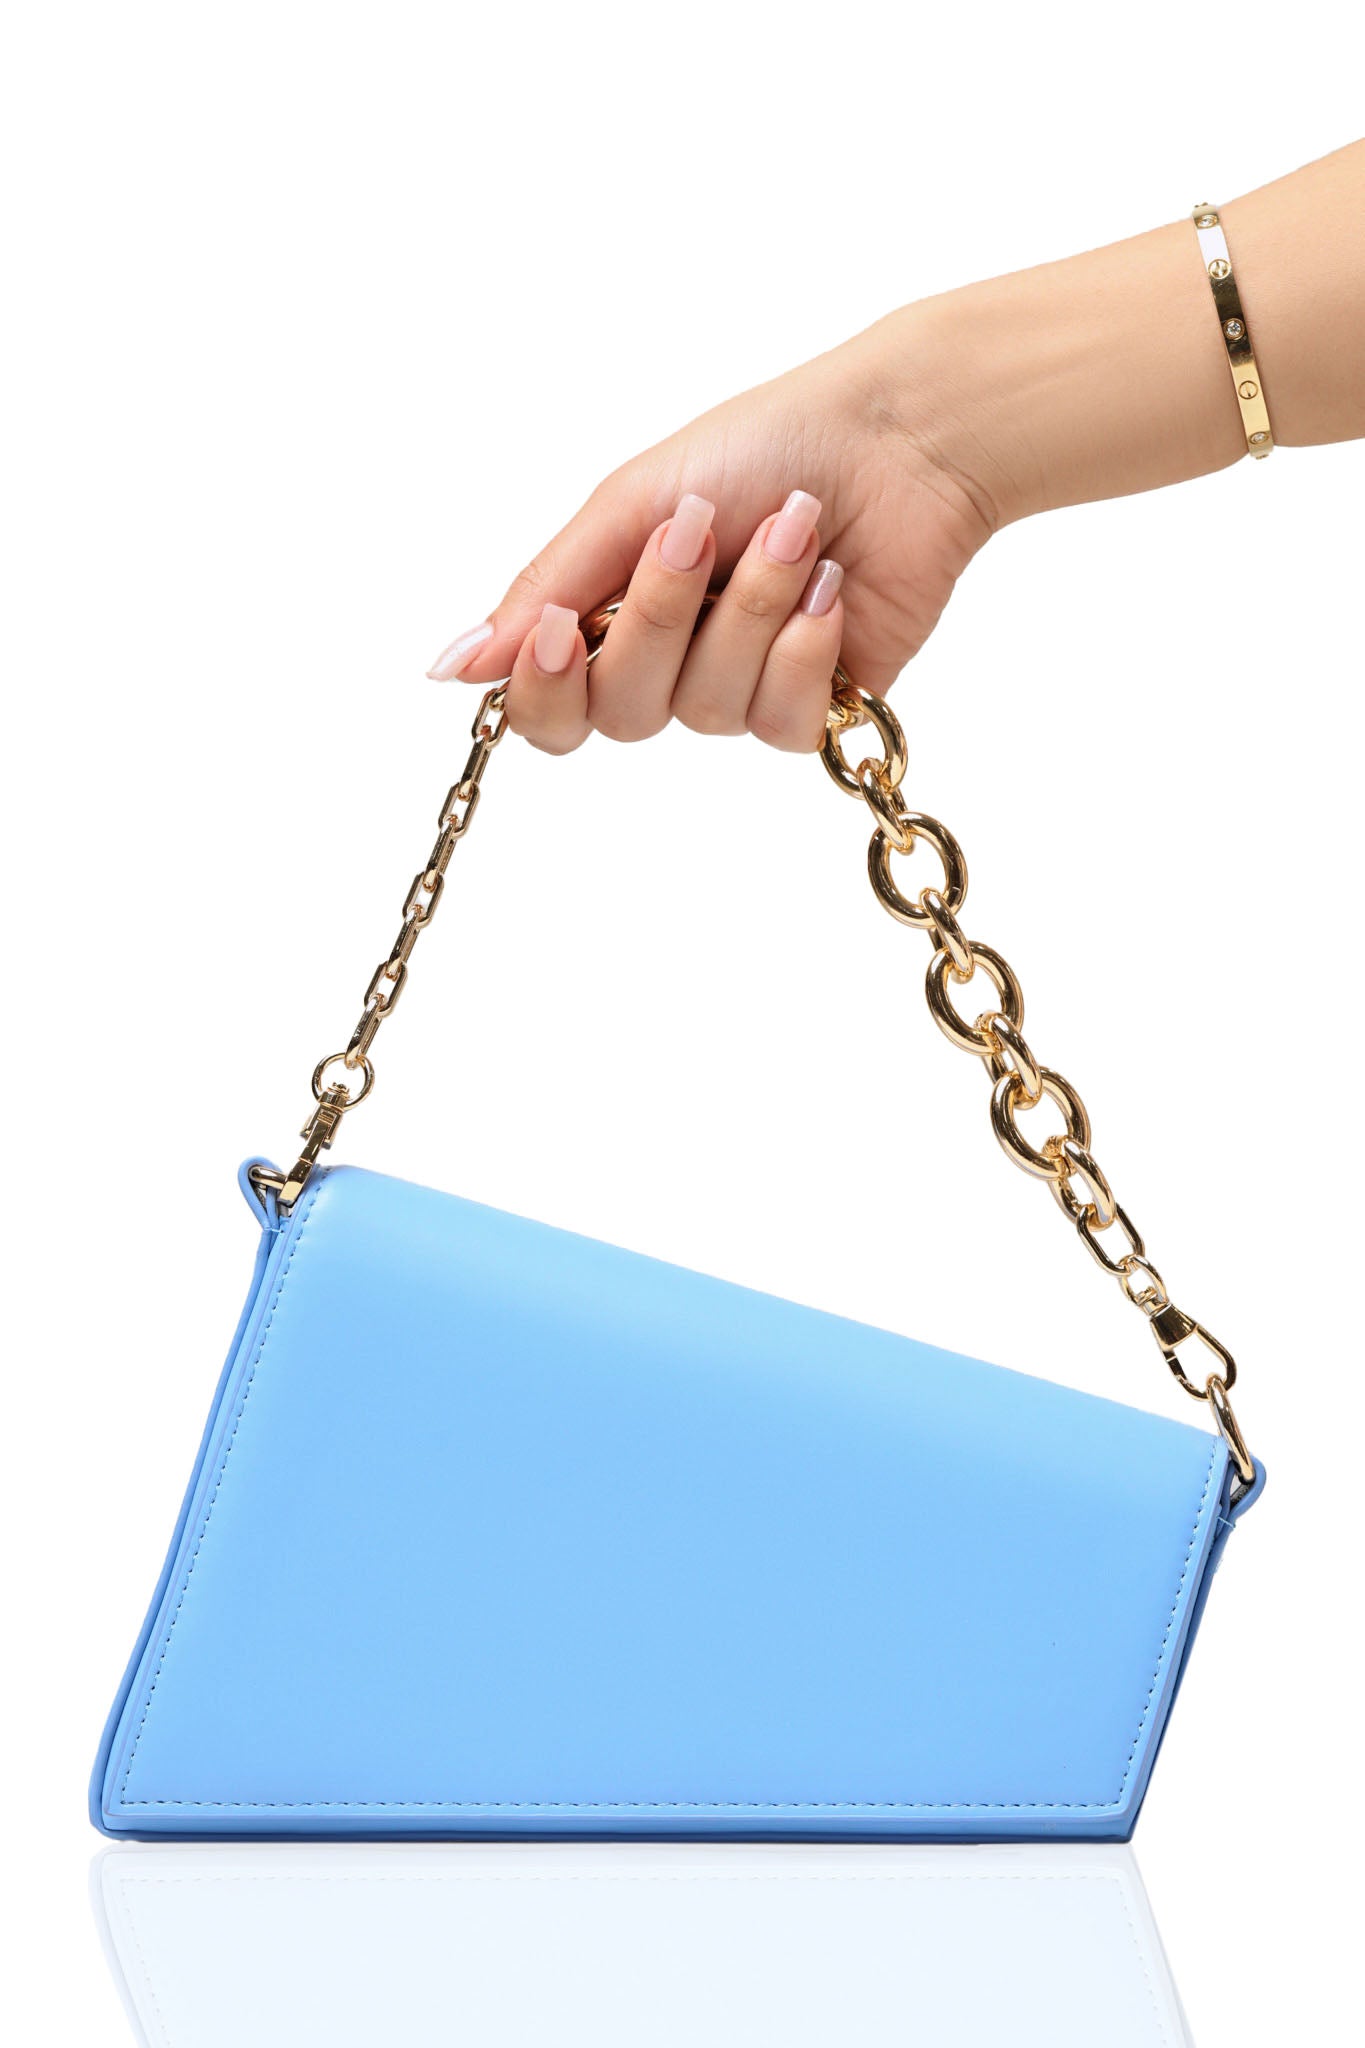 At An Angle Bag (Blue)